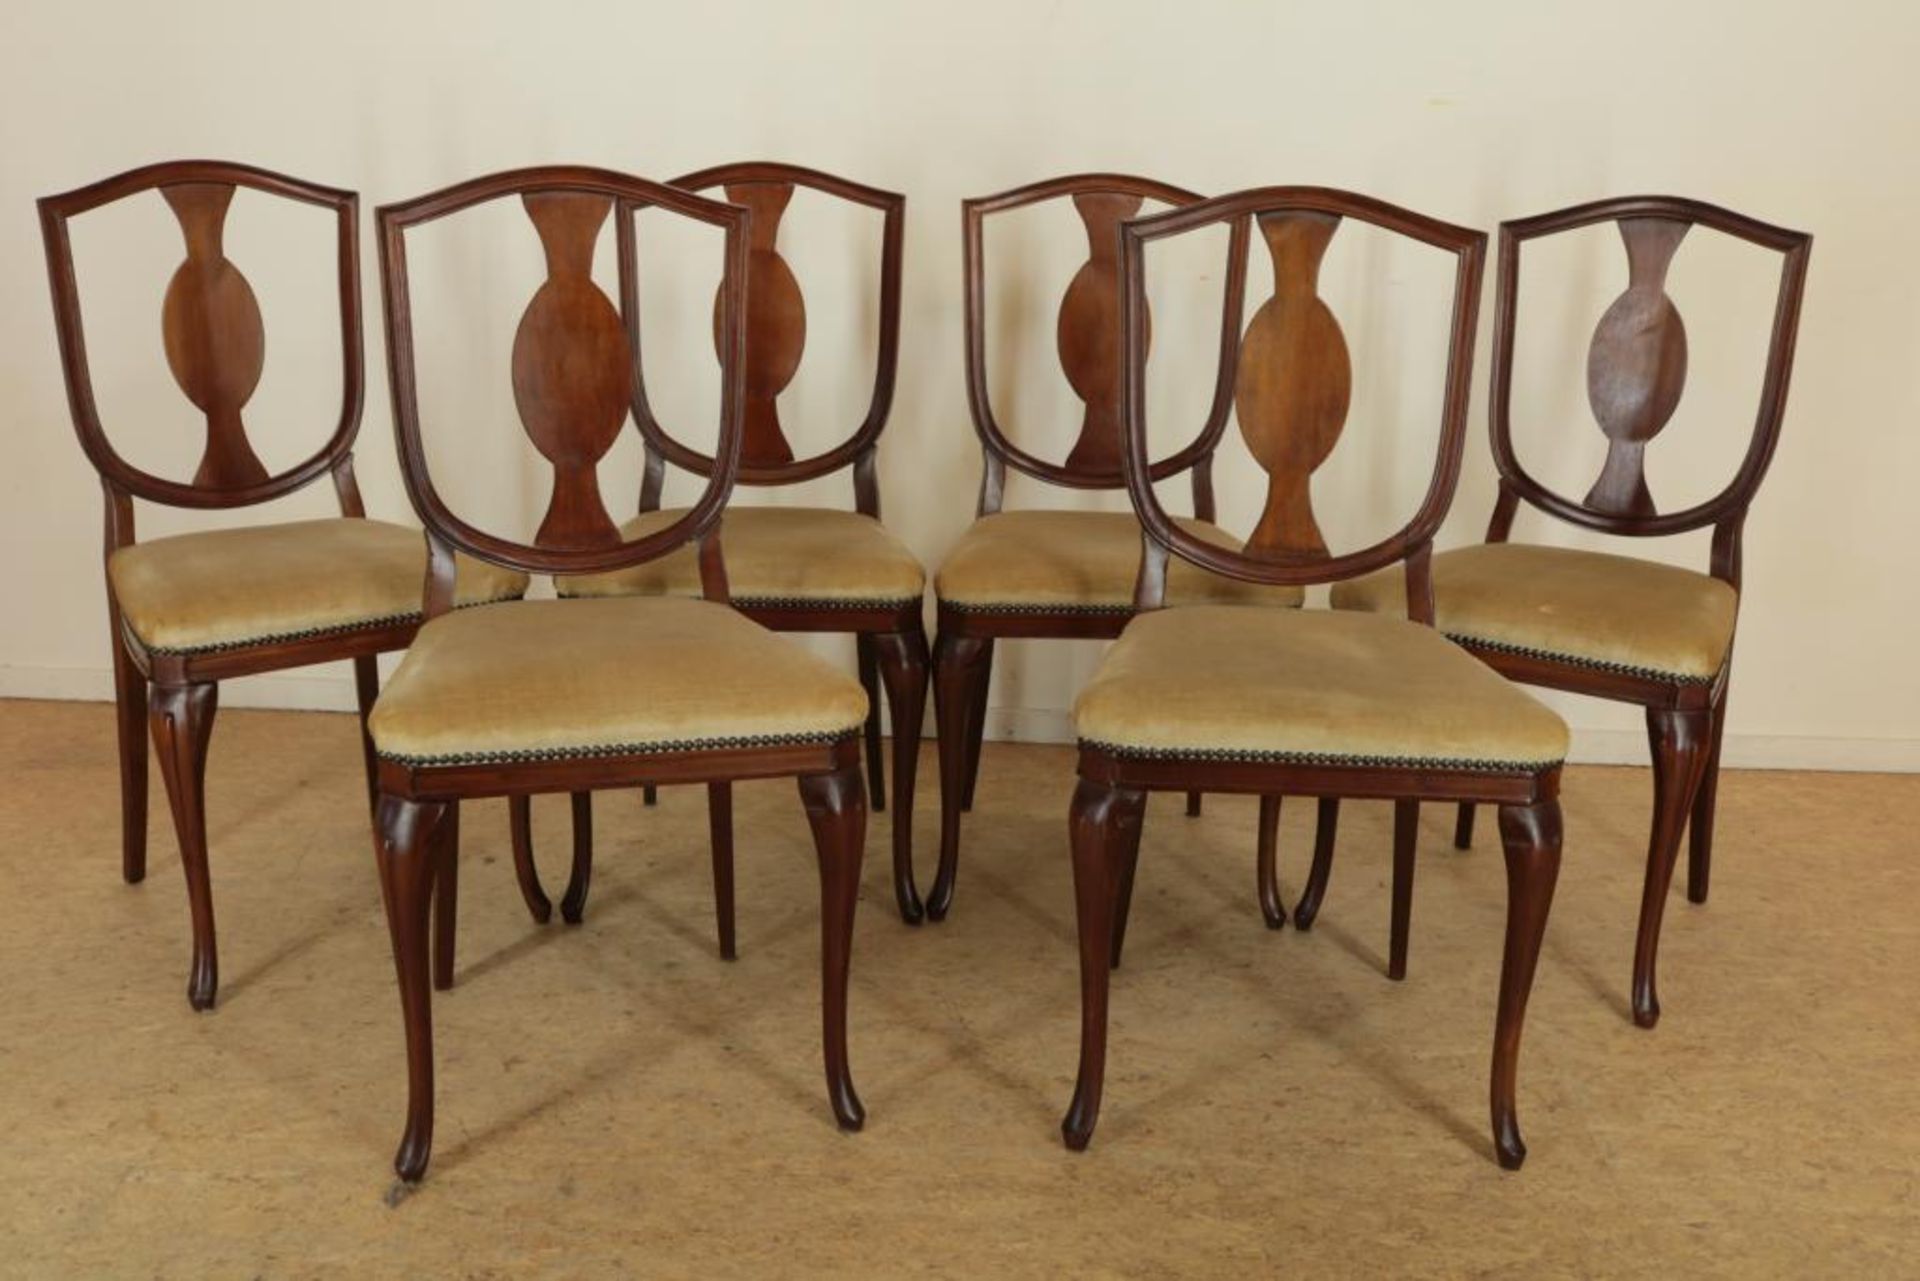 Serie van 6 mahonie stoelen met opgewerkte leuning en groen velourse zitting.